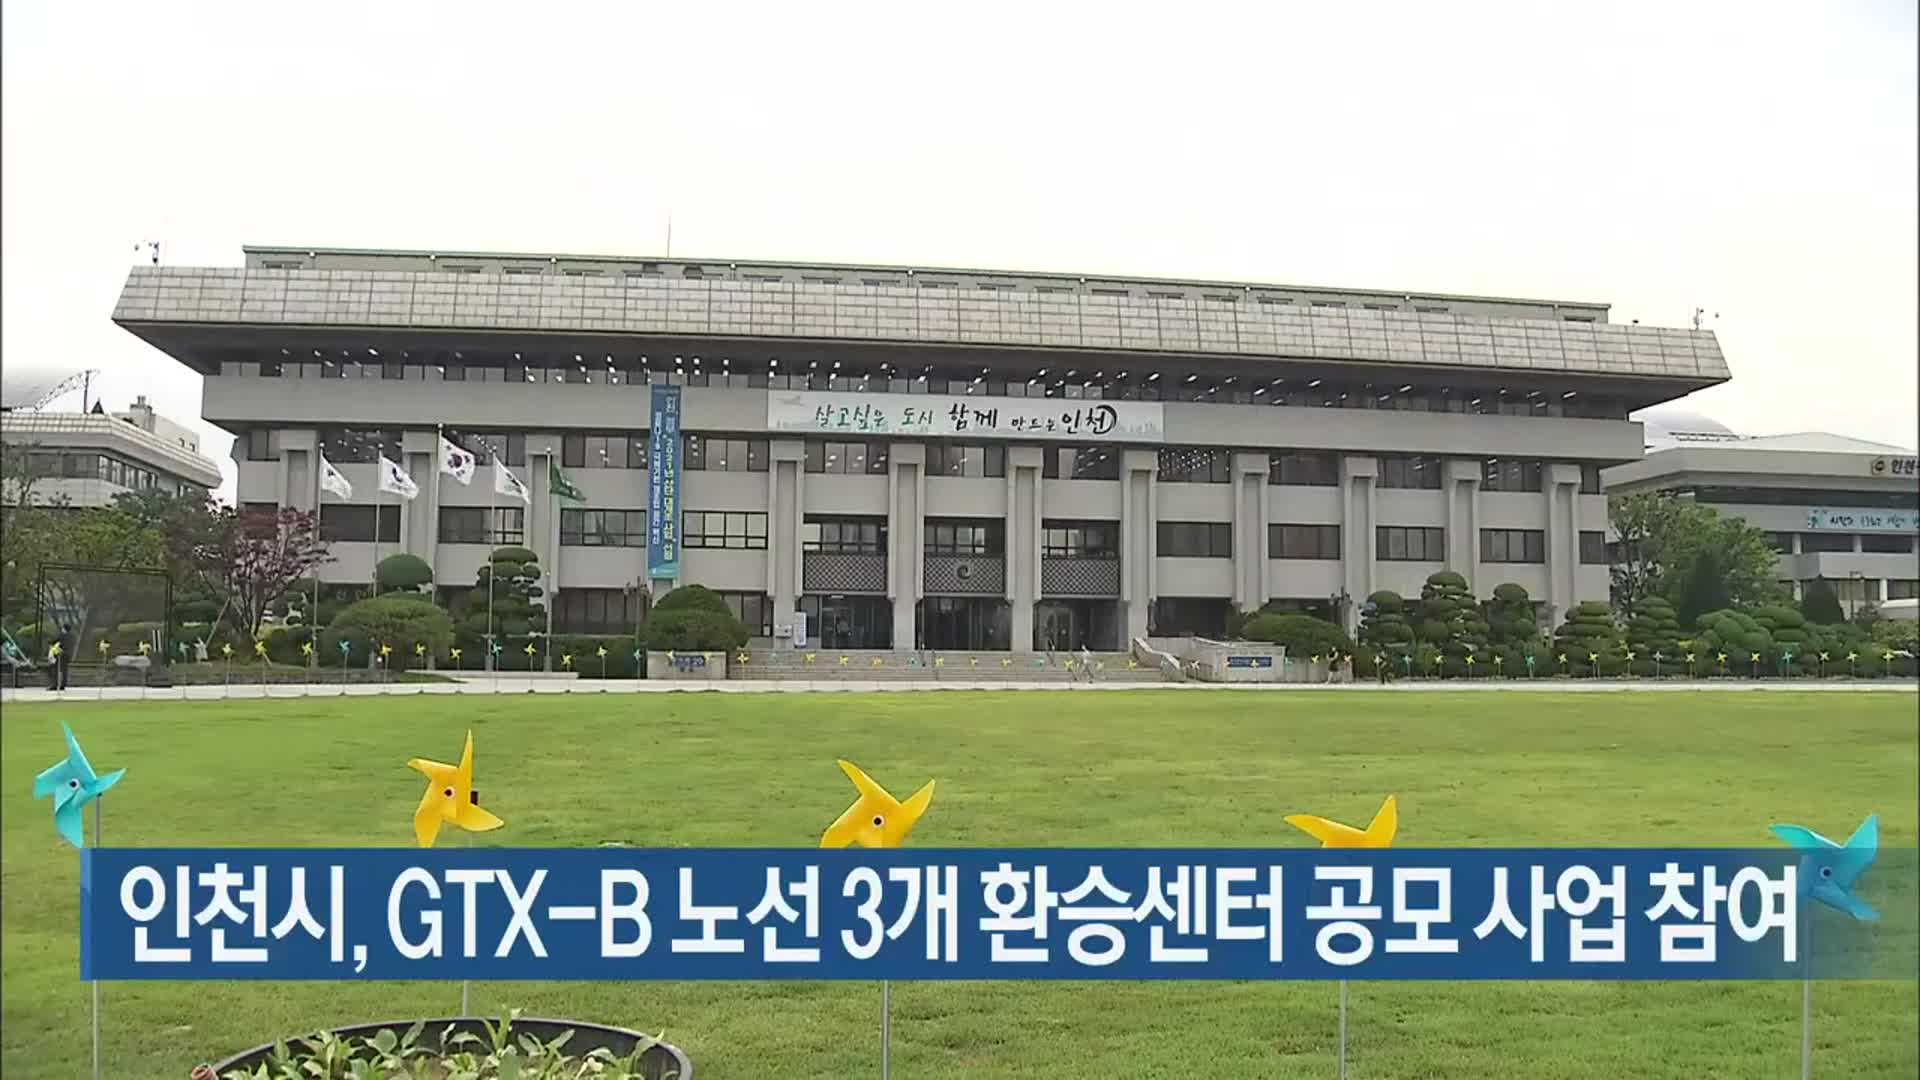 인천시, GTX-B 노선 3개 환승센터 공모 사업 참여